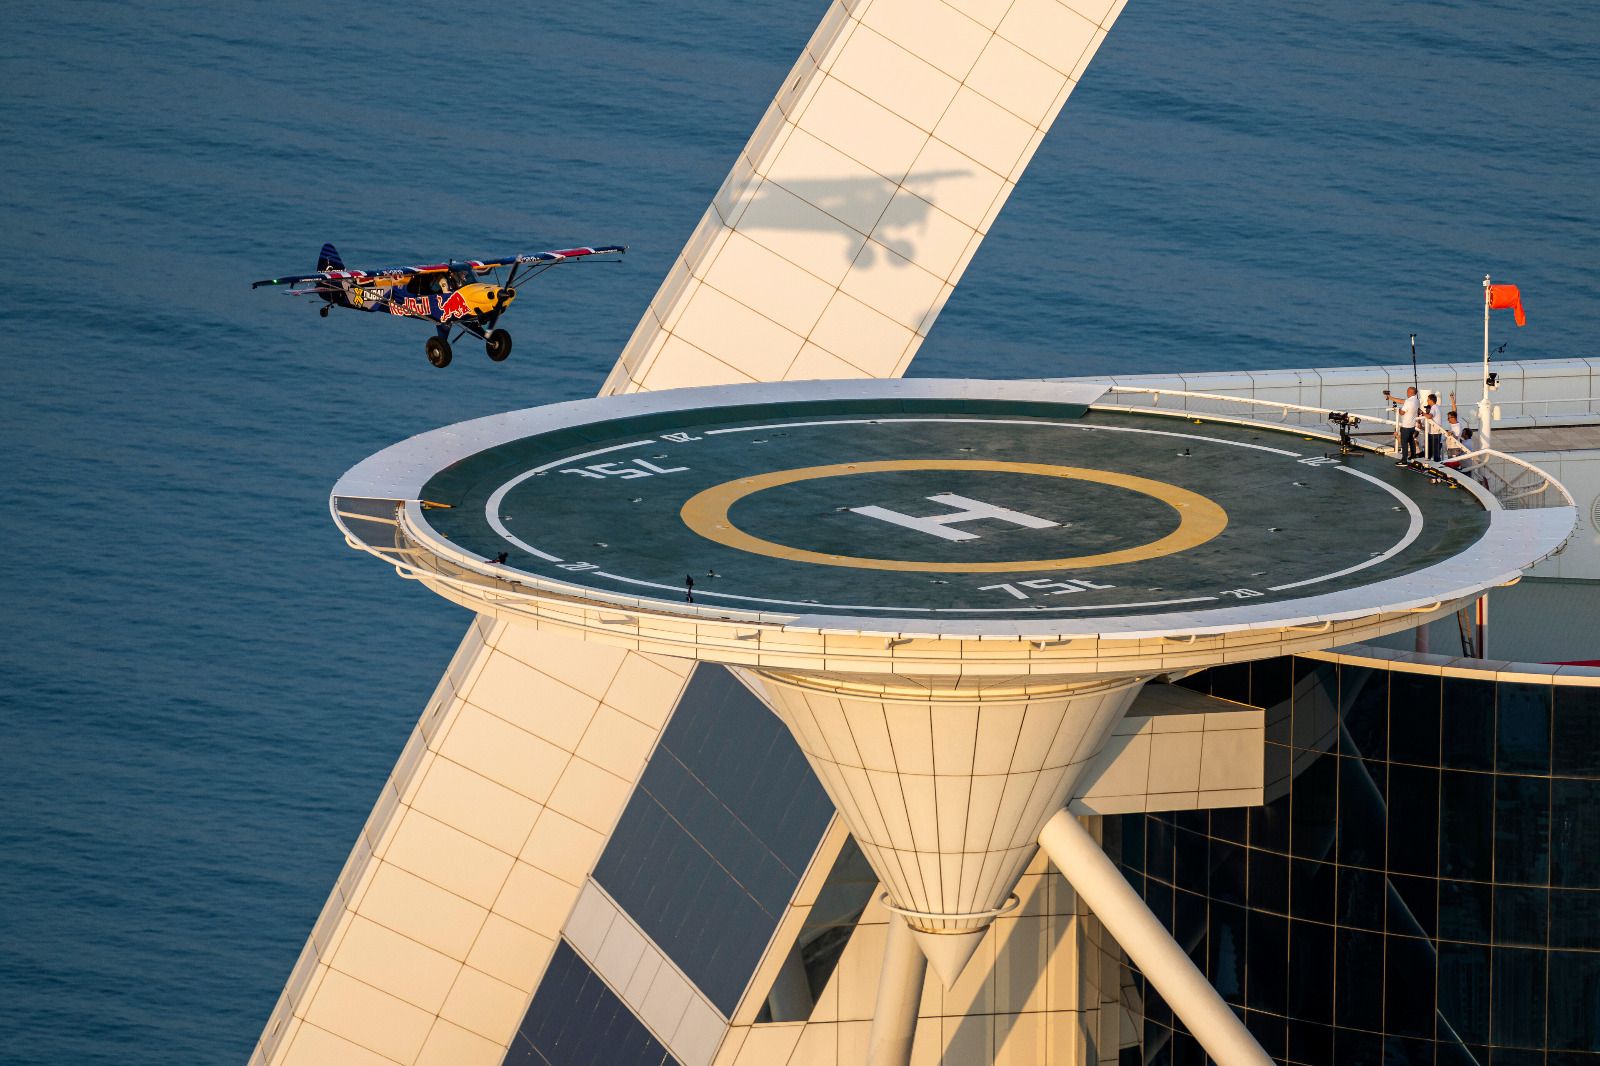 طيار يحط بطائرته على مهبط مروحيات برج العرب الأيقوني في دبي